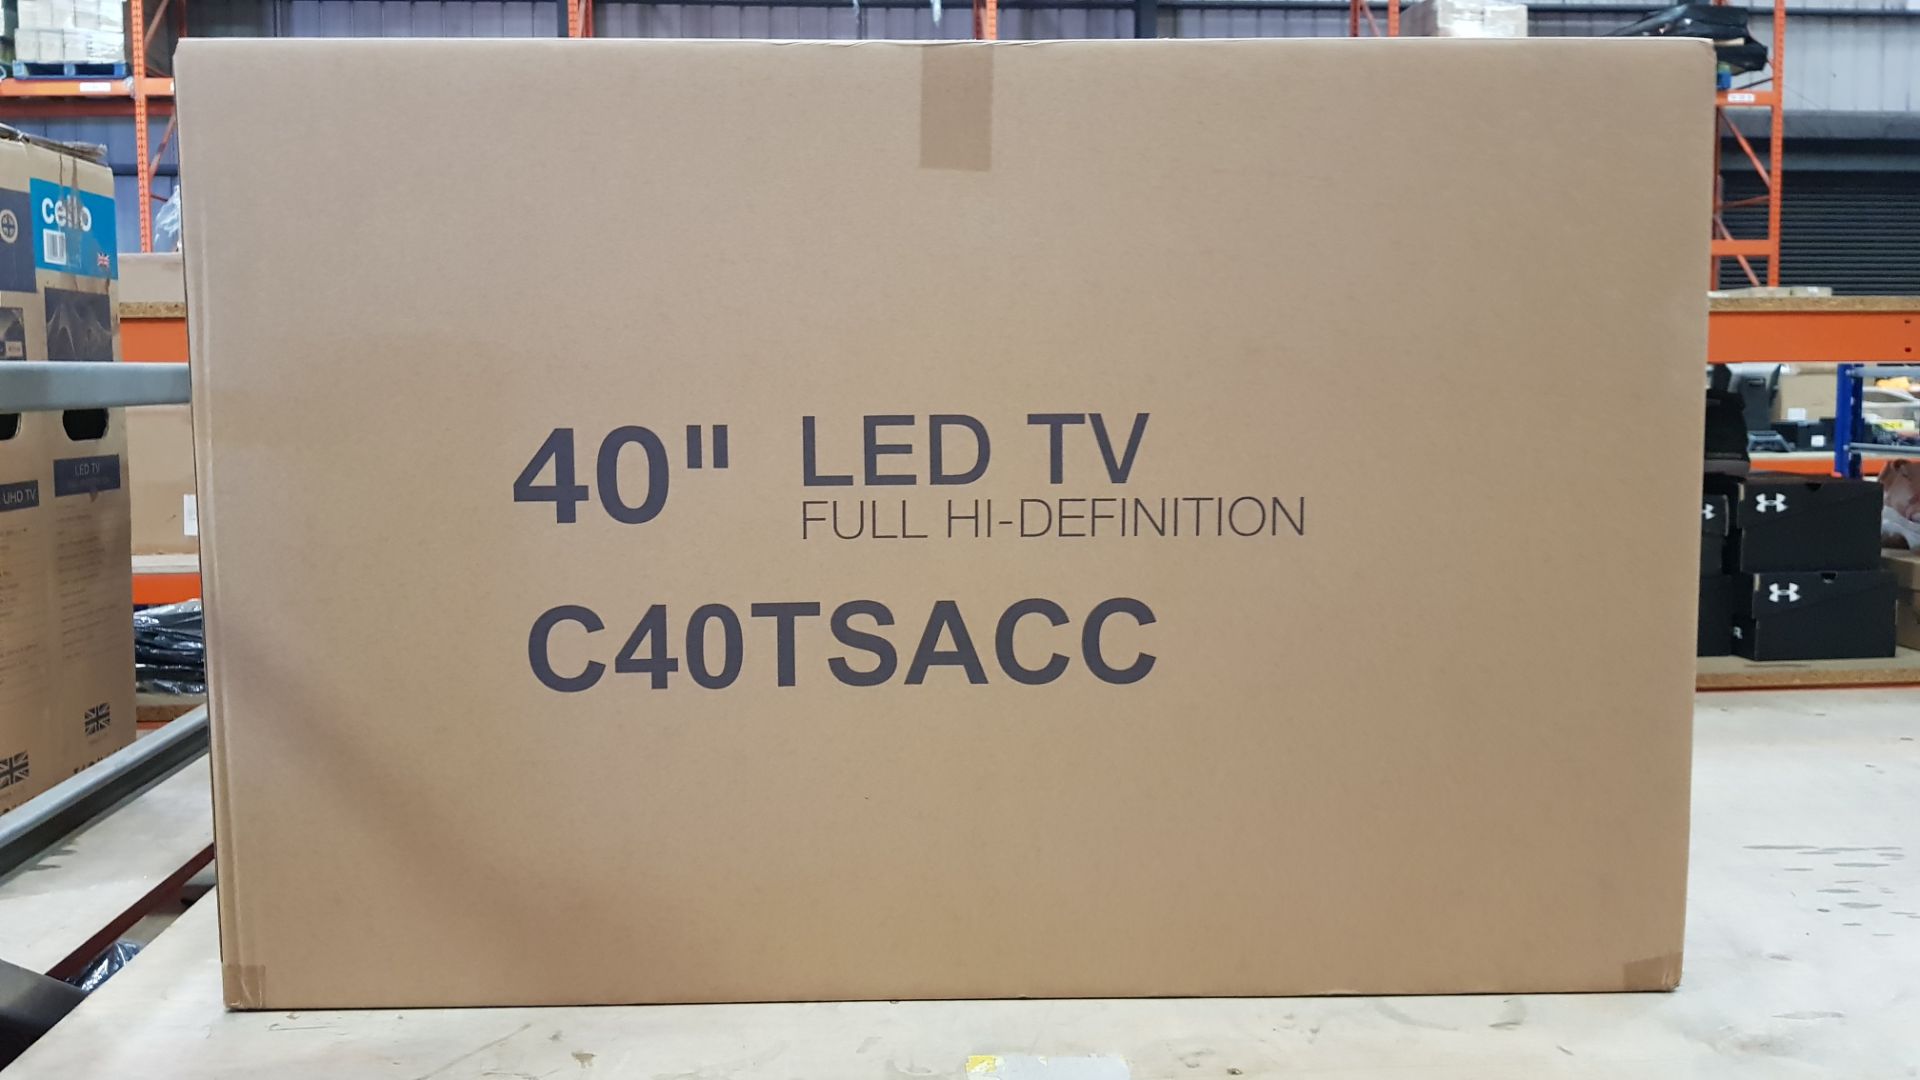 BRAND NEW CELLO 40 LED FULL HI-DEFINITION TV (C40TSACC)